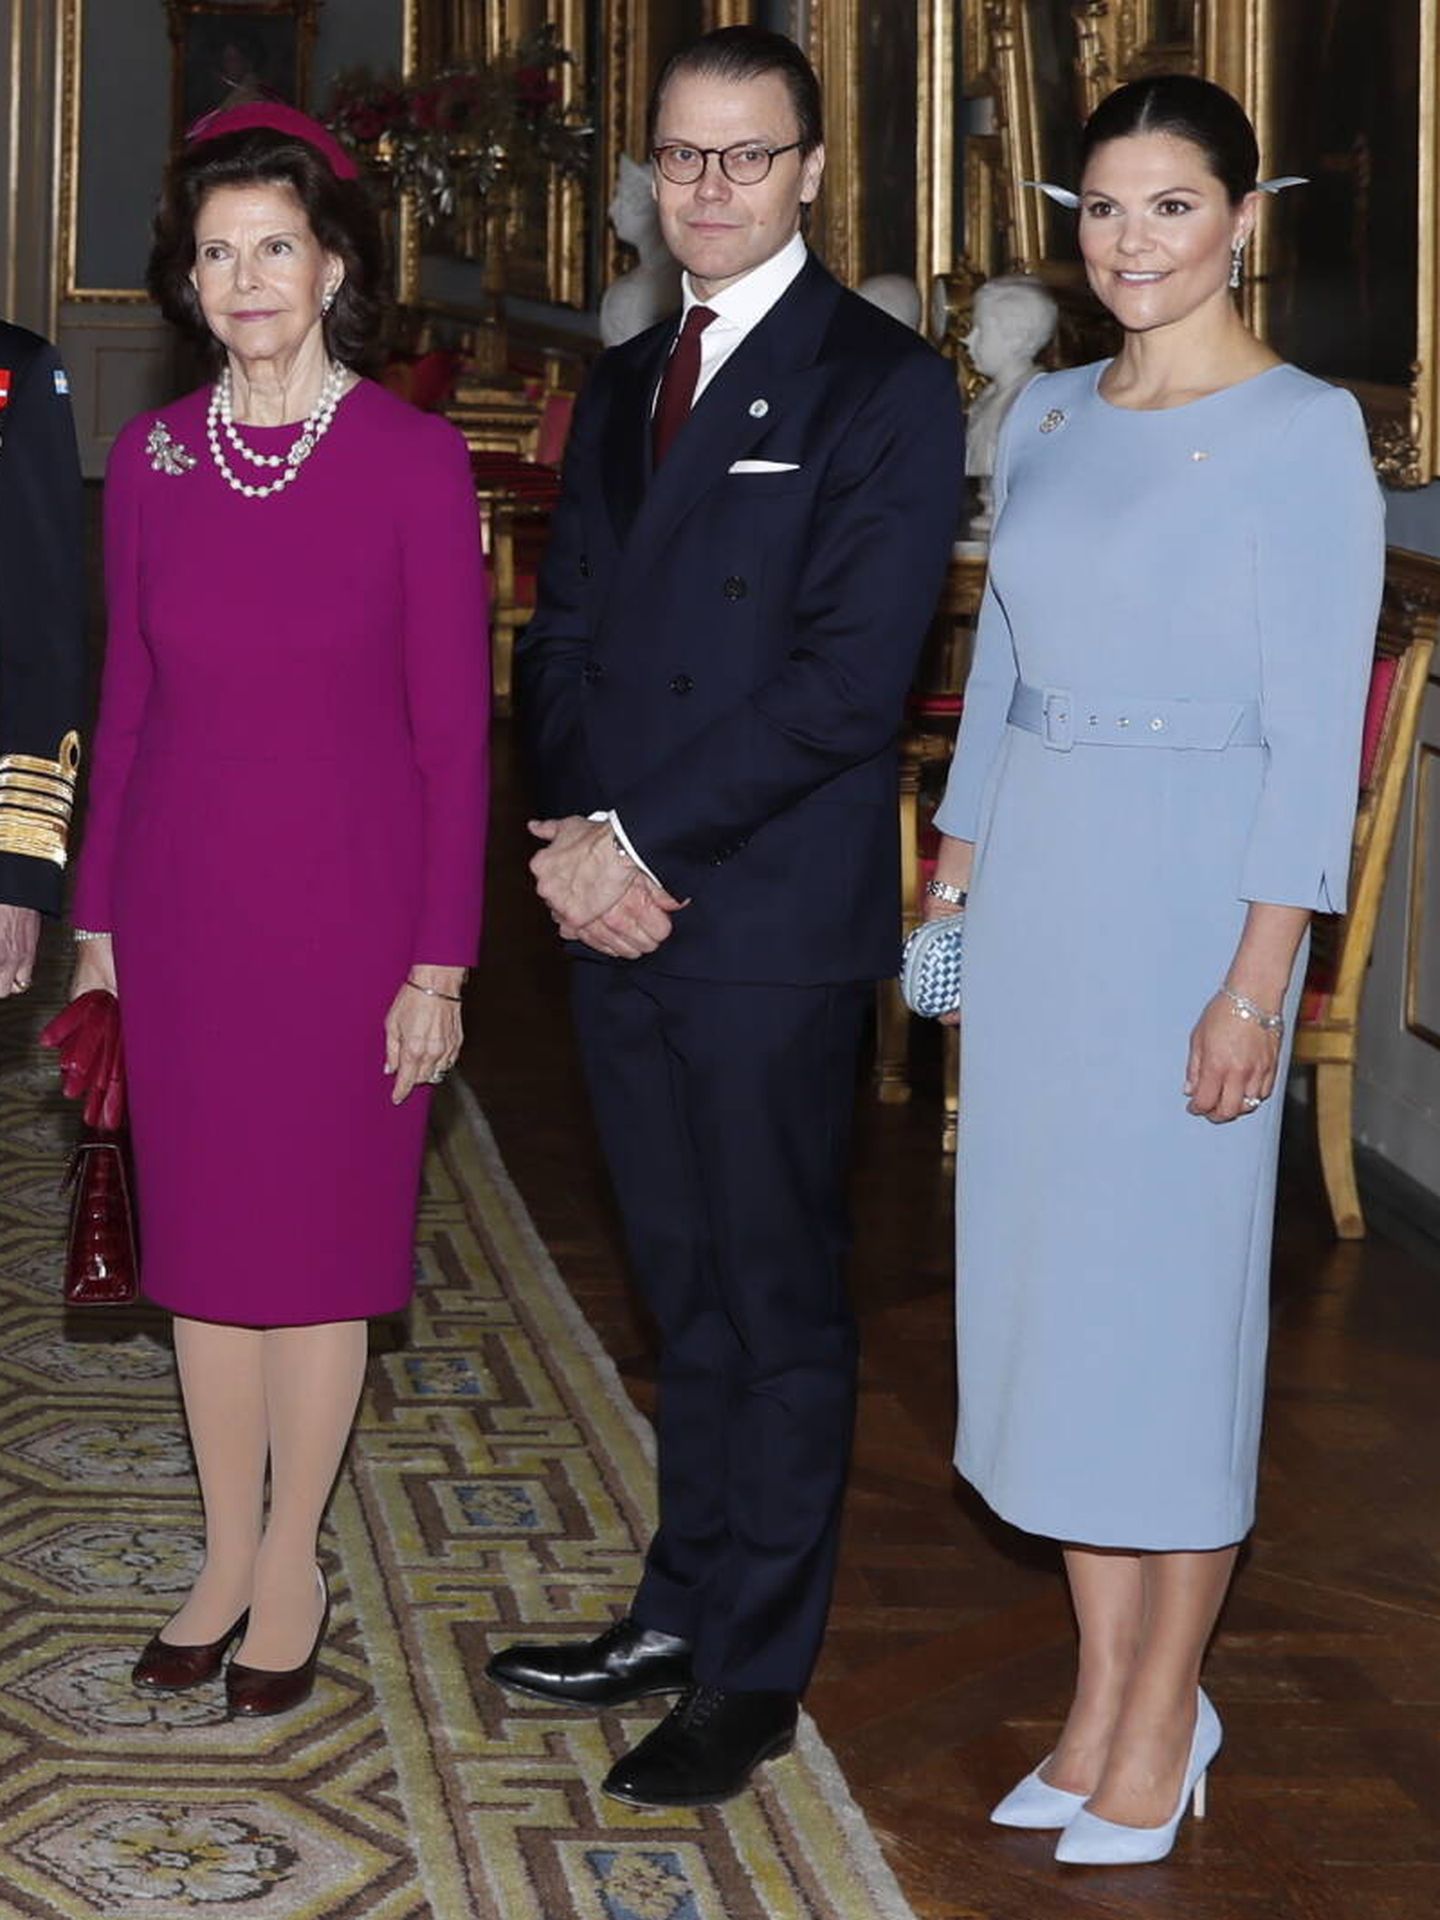 Los herederos suecos, junto a la reina Silvia. (Gtres)